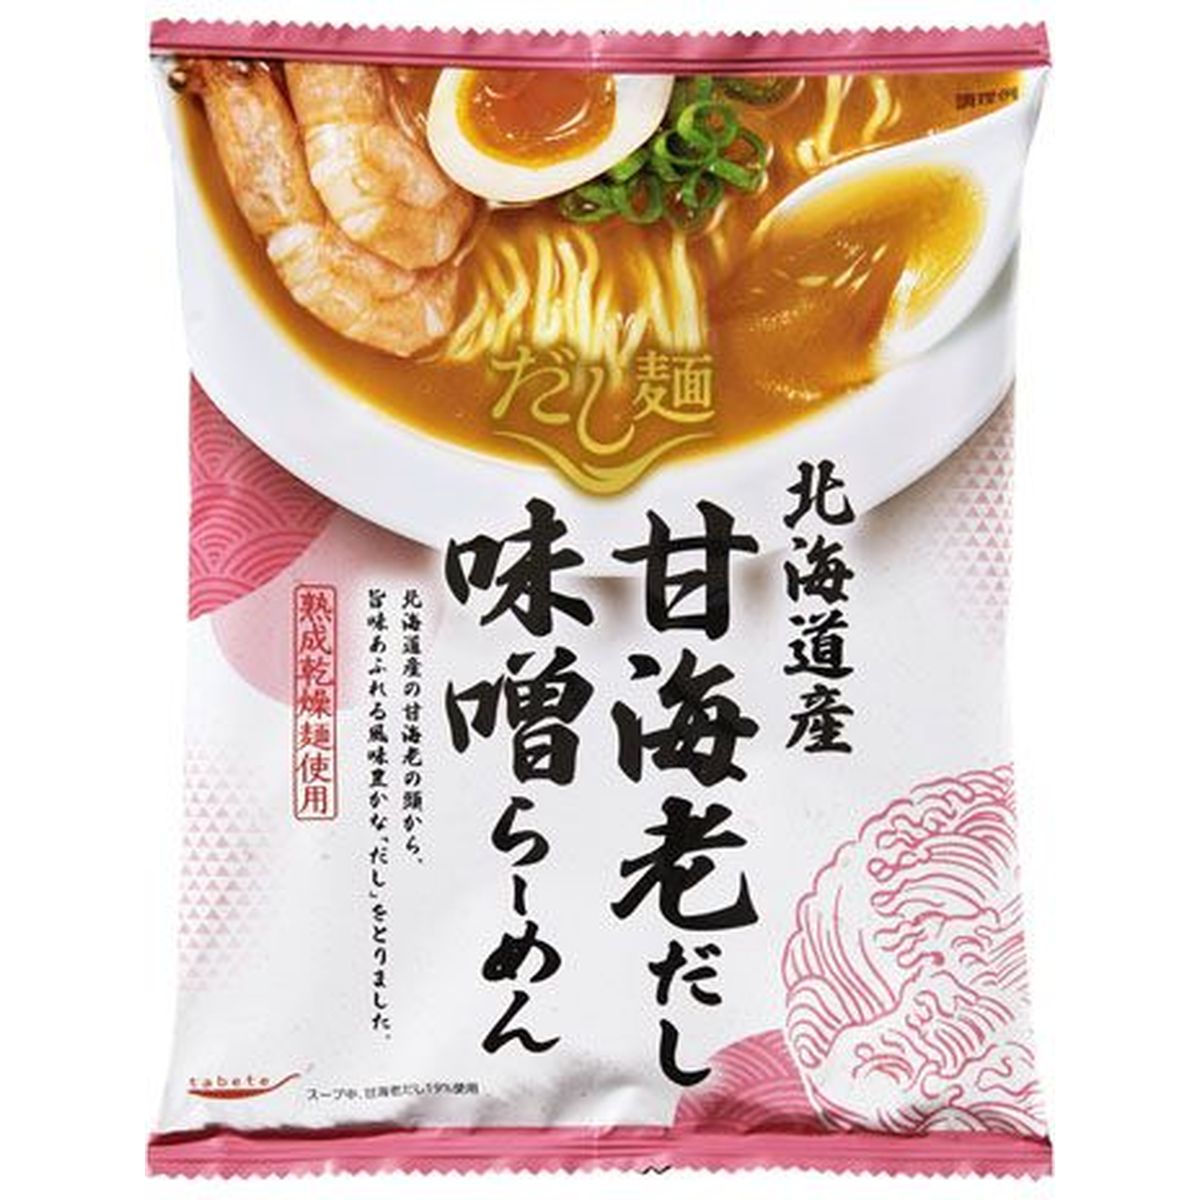 【10個入リ】新ダシ麺 北海道産甘海老ダシ味噌ラーメン 104g